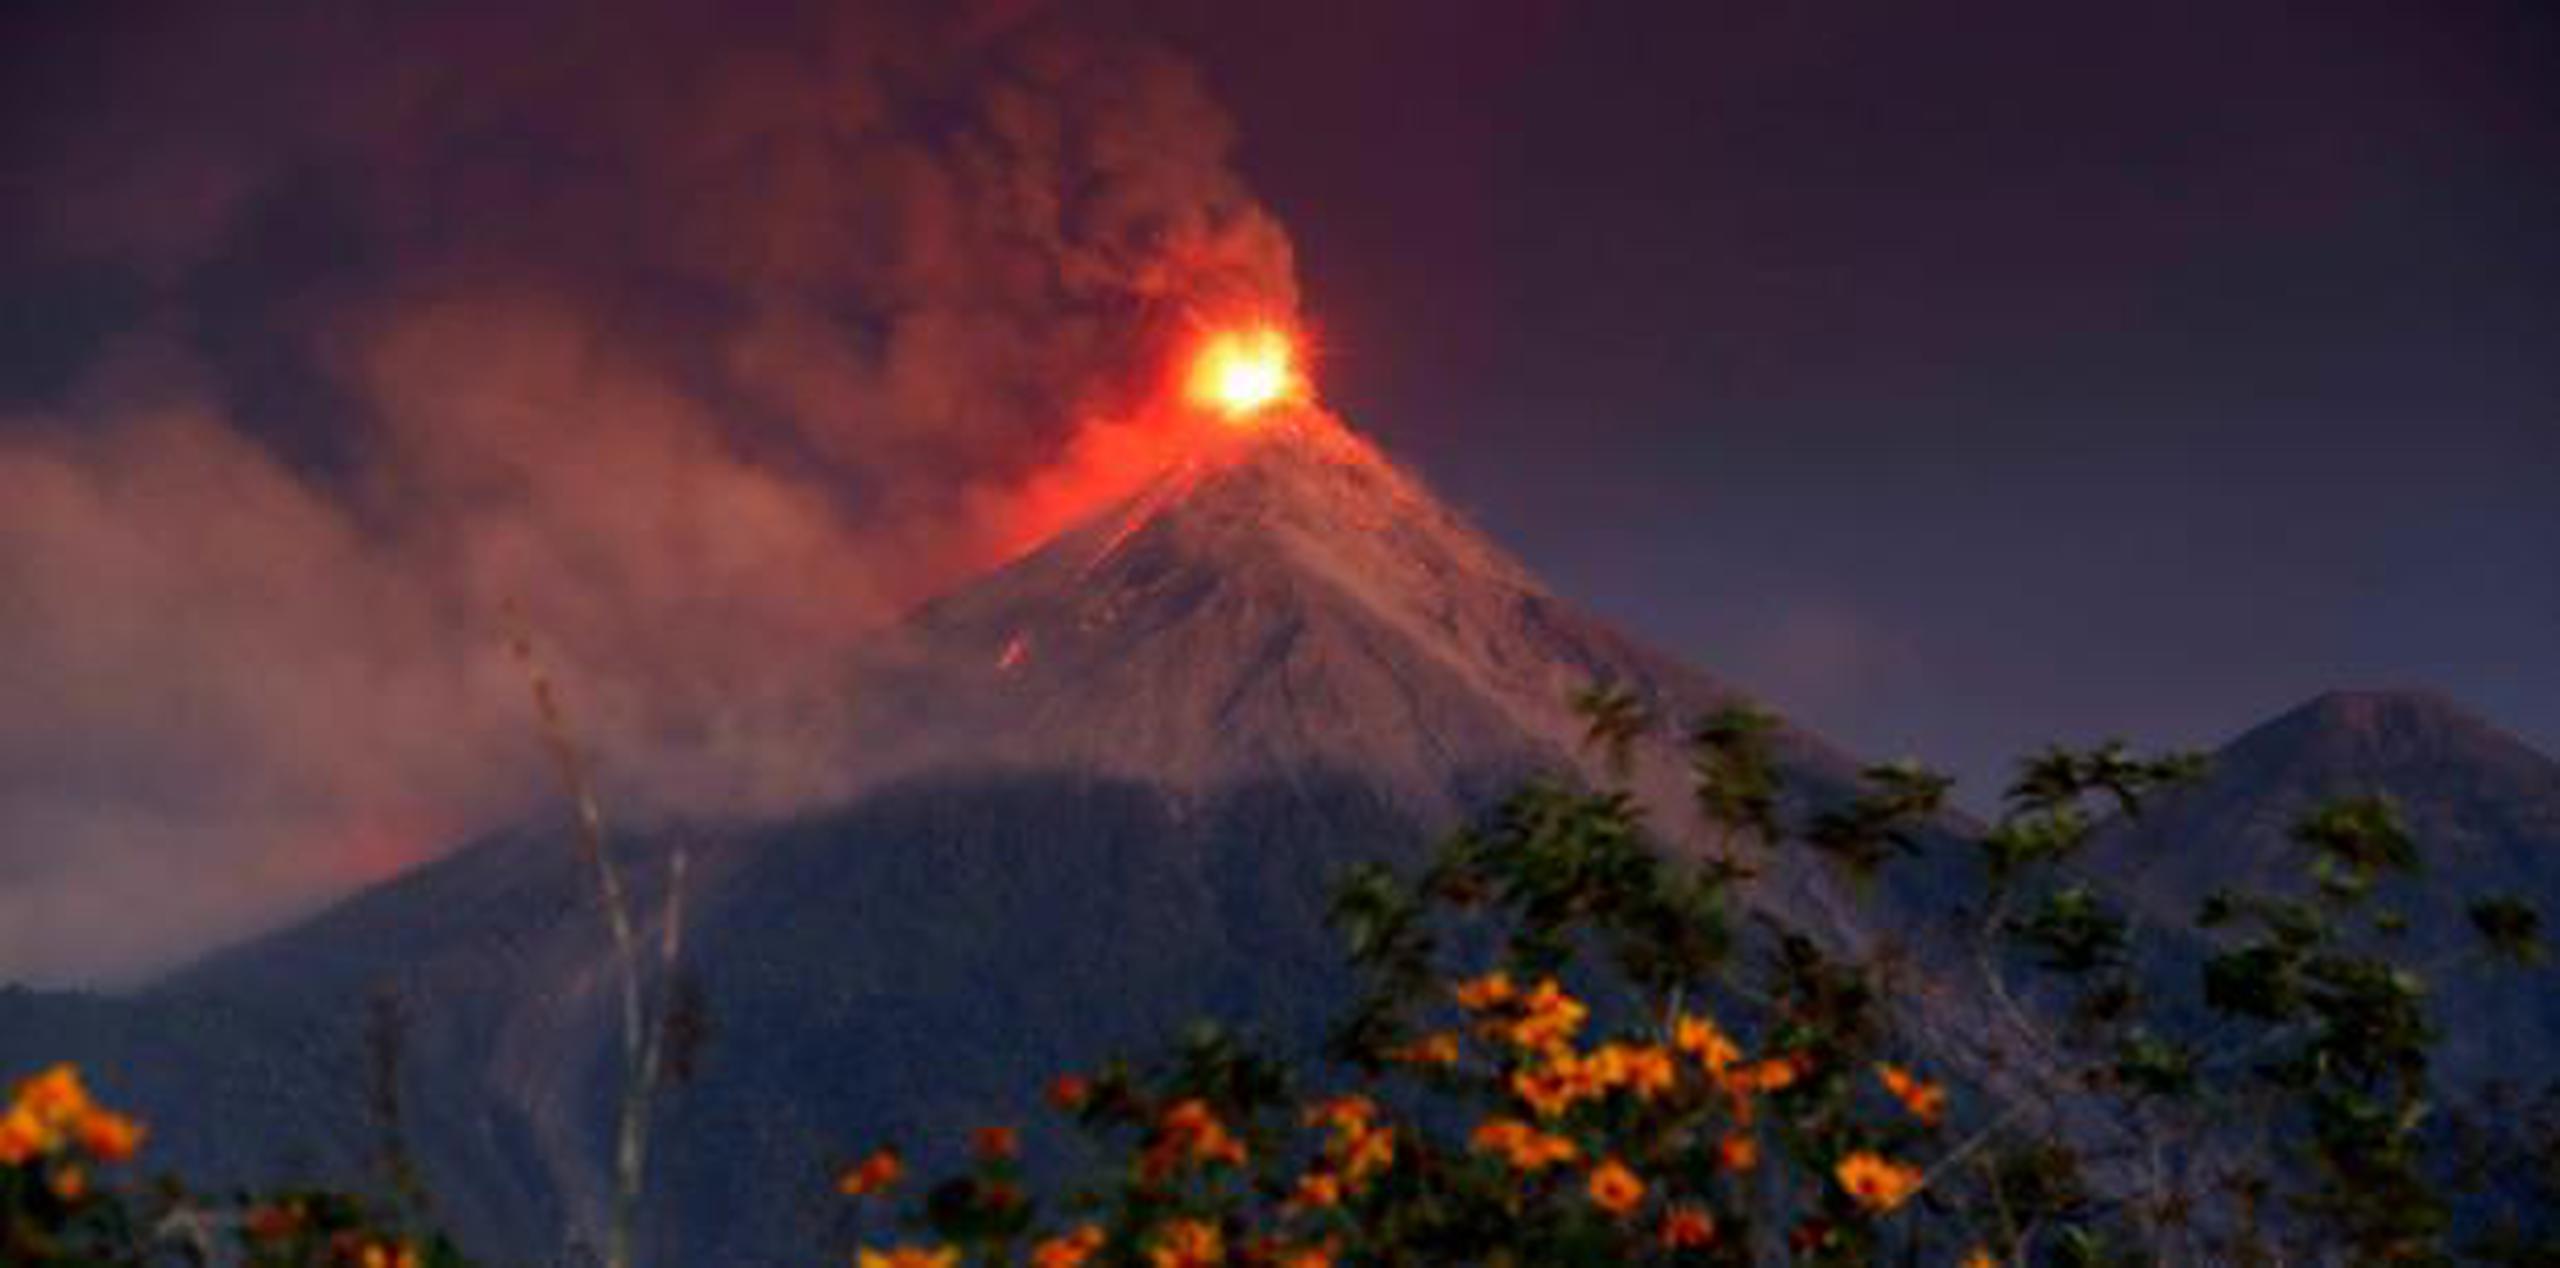 Según una institución de protección civil, la nueva erupción del volcán de Fuego, ubicado 50 kilómetros al oeste de la capital guatemalteca, ha afectado ya a 76,145 personas. (EFE)

